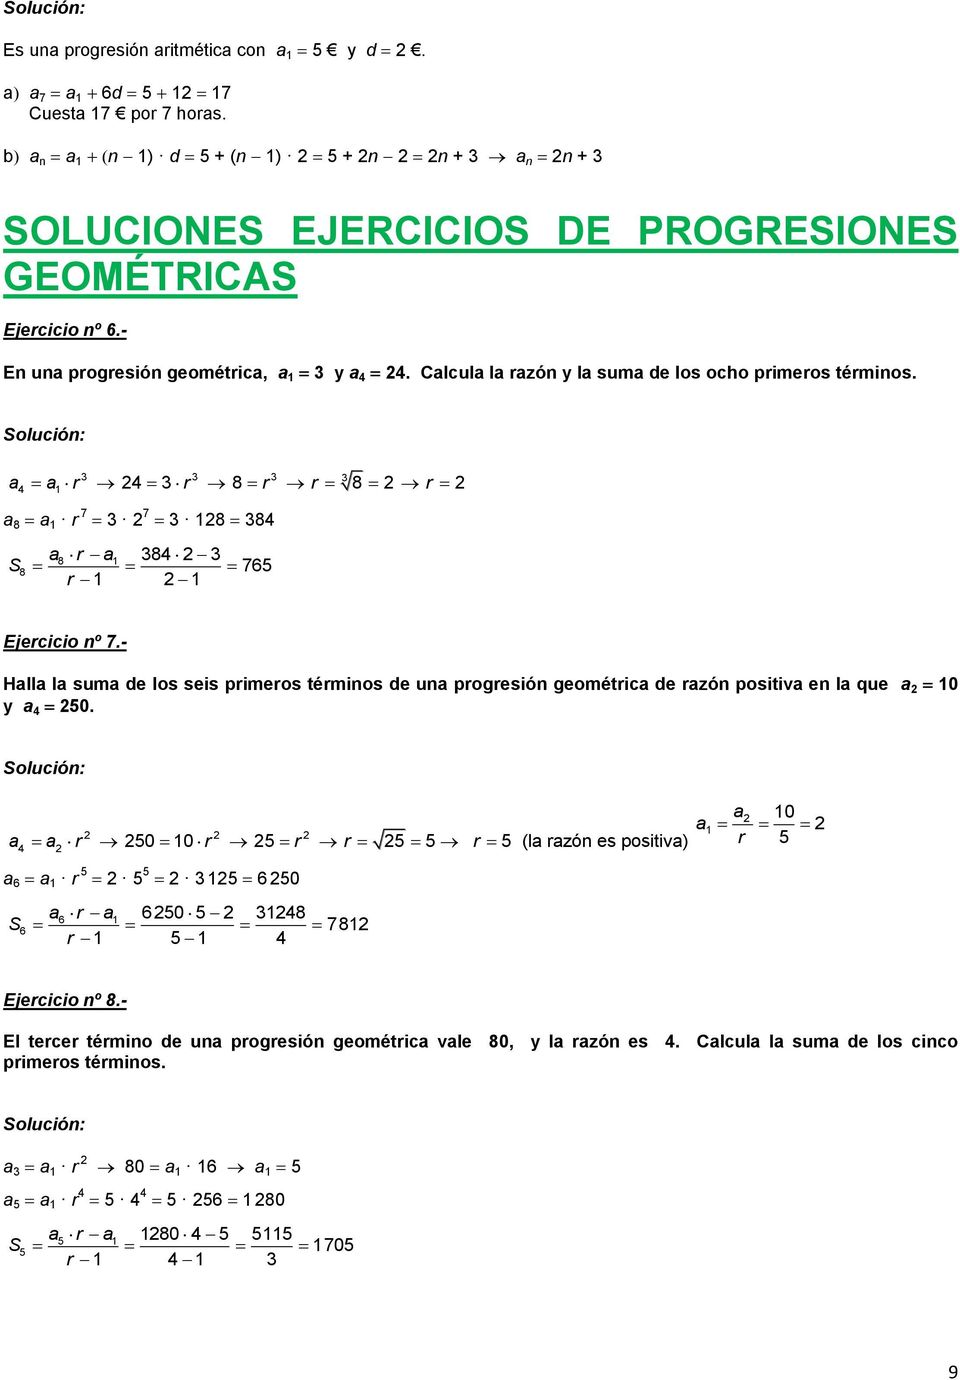 - Halla la suma de los seis primeros términos de una progresión geométrica de razón positiva en la que a 0 y a 50.